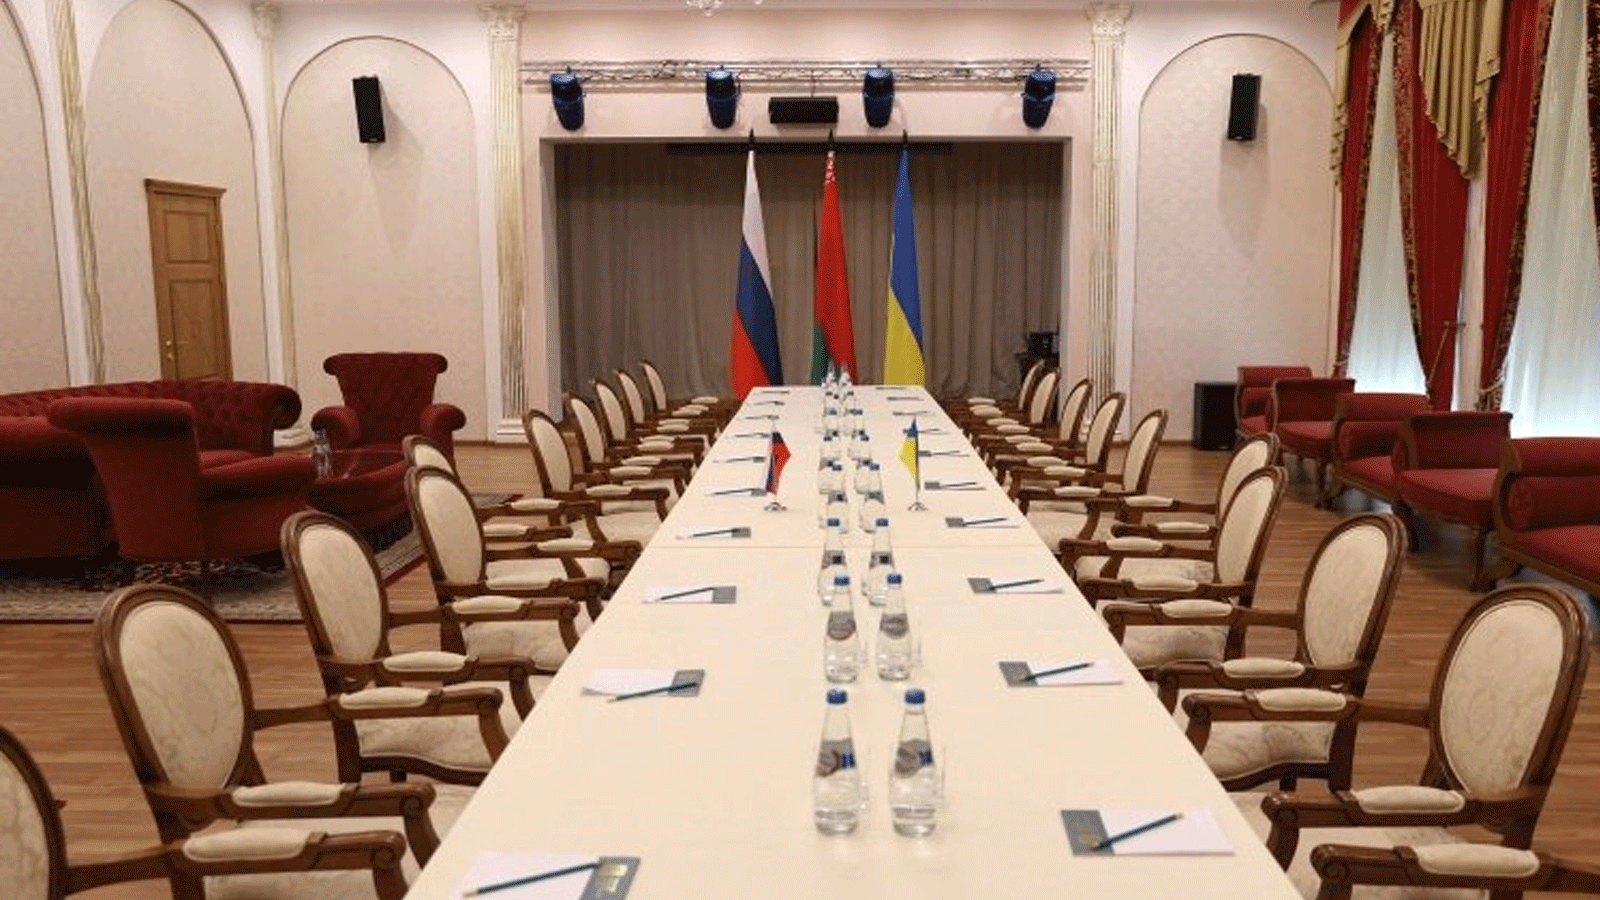 صورة للمكان الذي يستضيف المحادثات بين وفود من أوكرانيا وروسيا، منطقة غوميل، بيلاروسيا، 28 شباط\ فبراير 2022. 